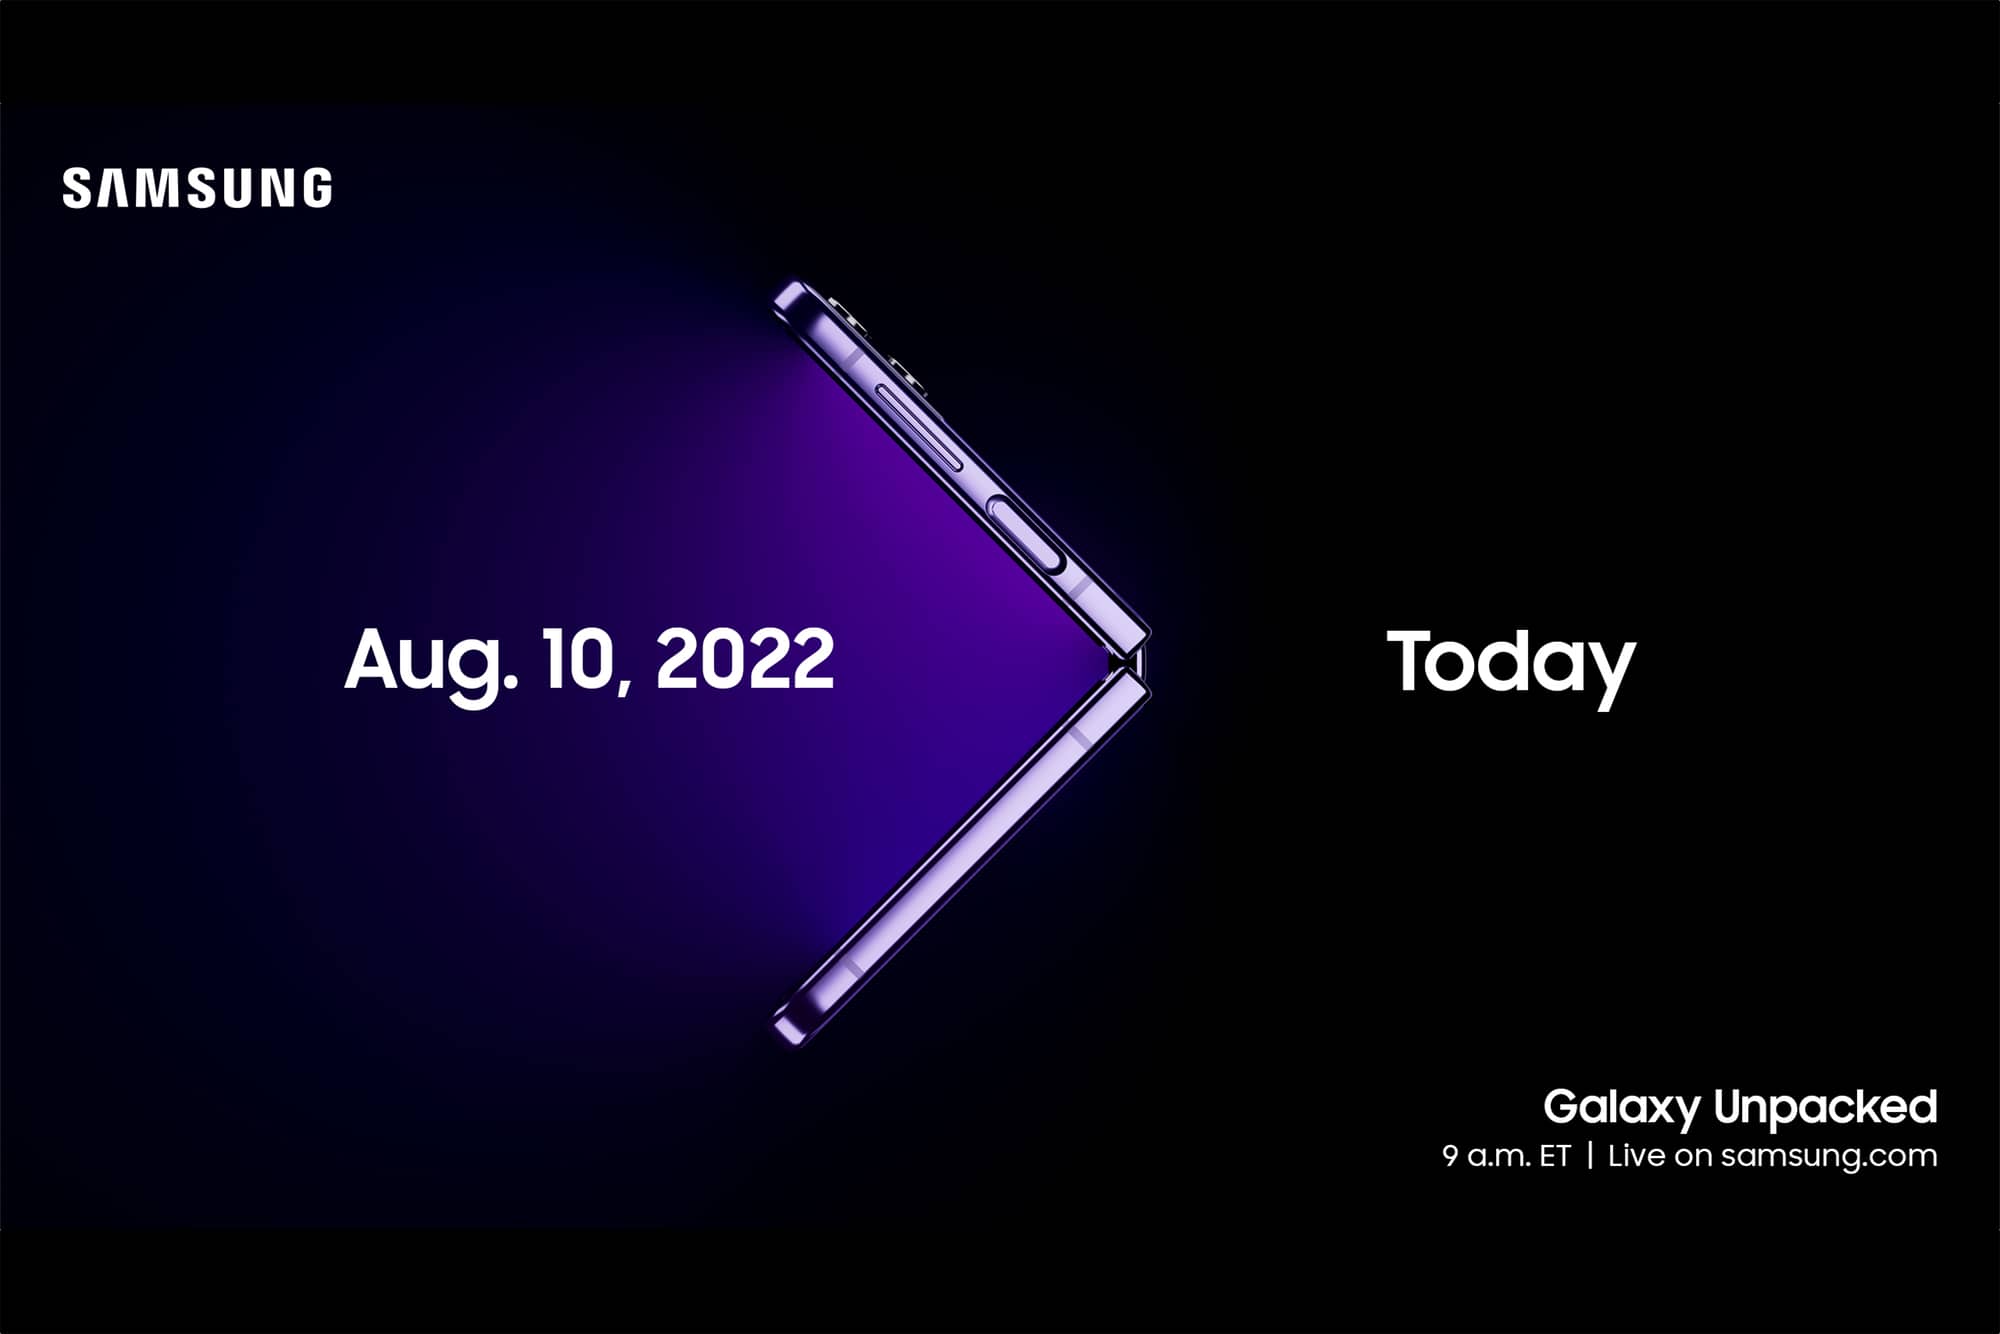 Le prochain événement Unpacked de Samsung aura lieu le 10 août